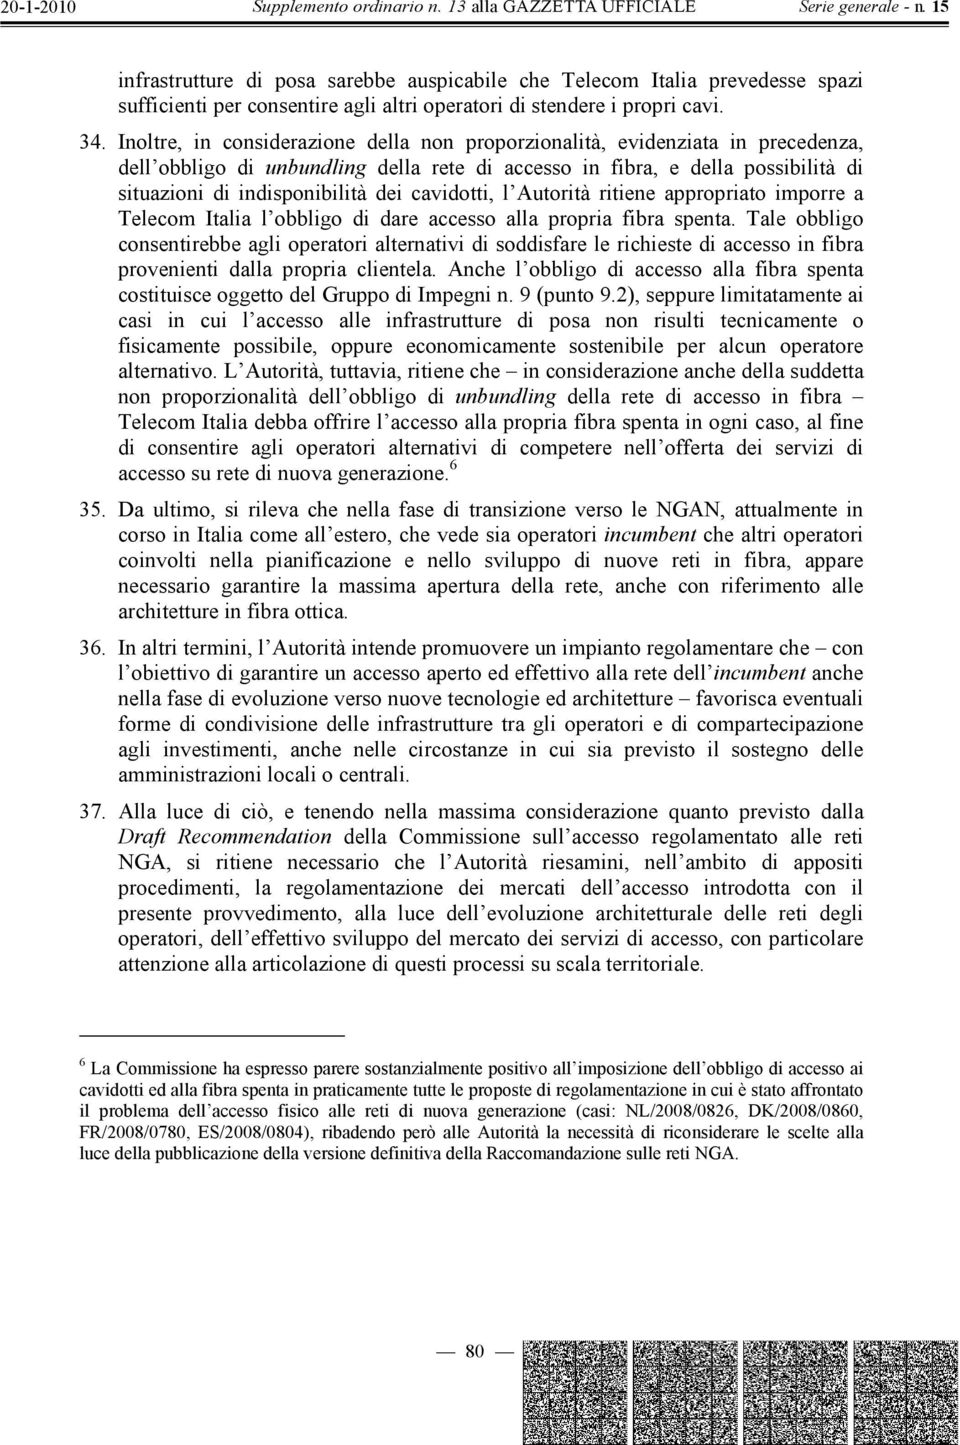 cavidotti, l Autorità ritiene appropriato imporre a Telecom Italia l obbligo di dare accesso alla propria fibra spenta.